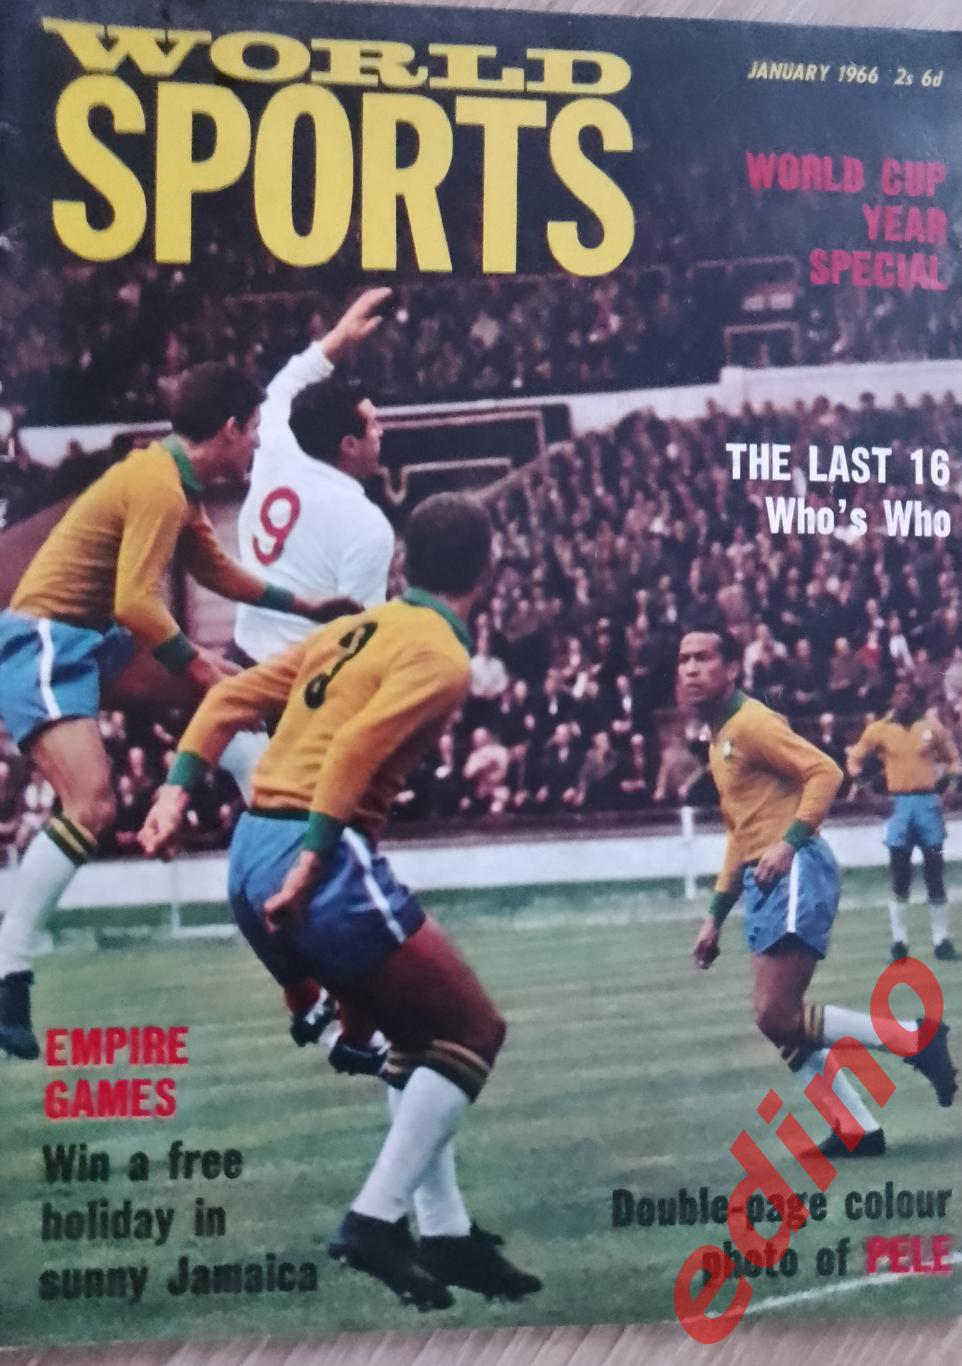 Мировой спорт. журнал. Англия 1966 г. ПЕЛЕ